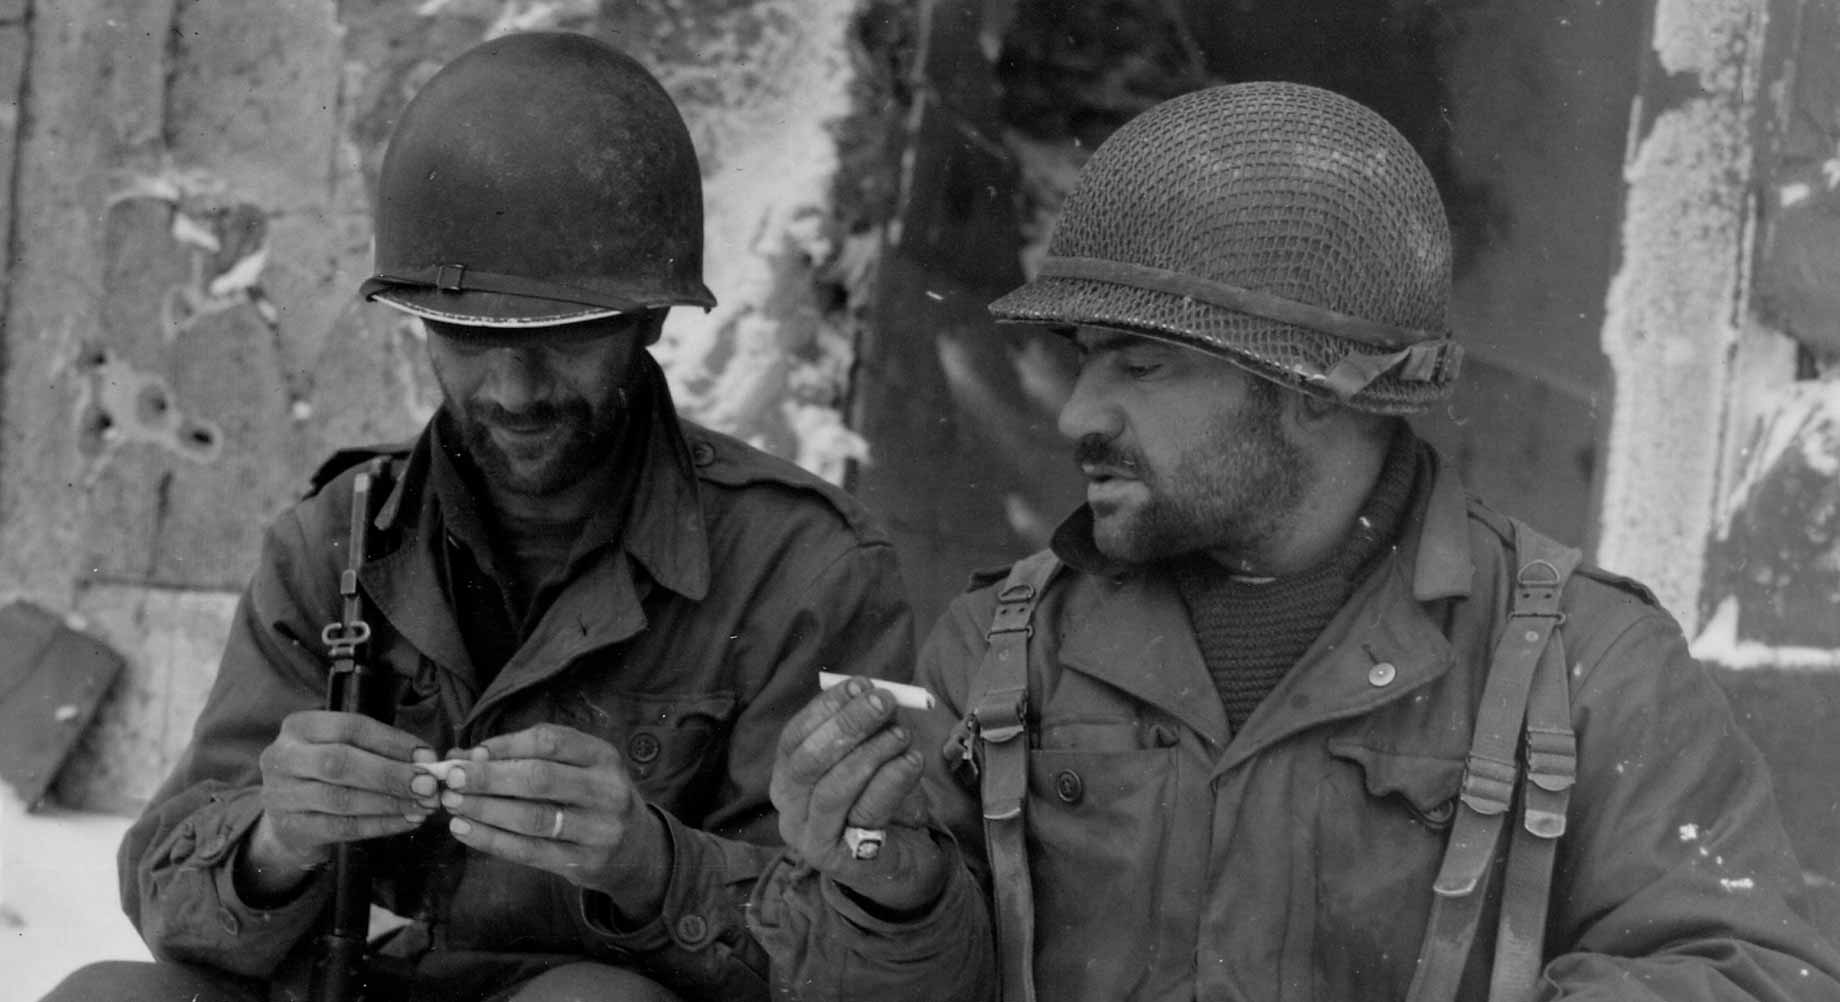 Deux soldats du 317e régiment d'infantrie se roulent une cagarette, 10 janvier 1945, Luxembourg